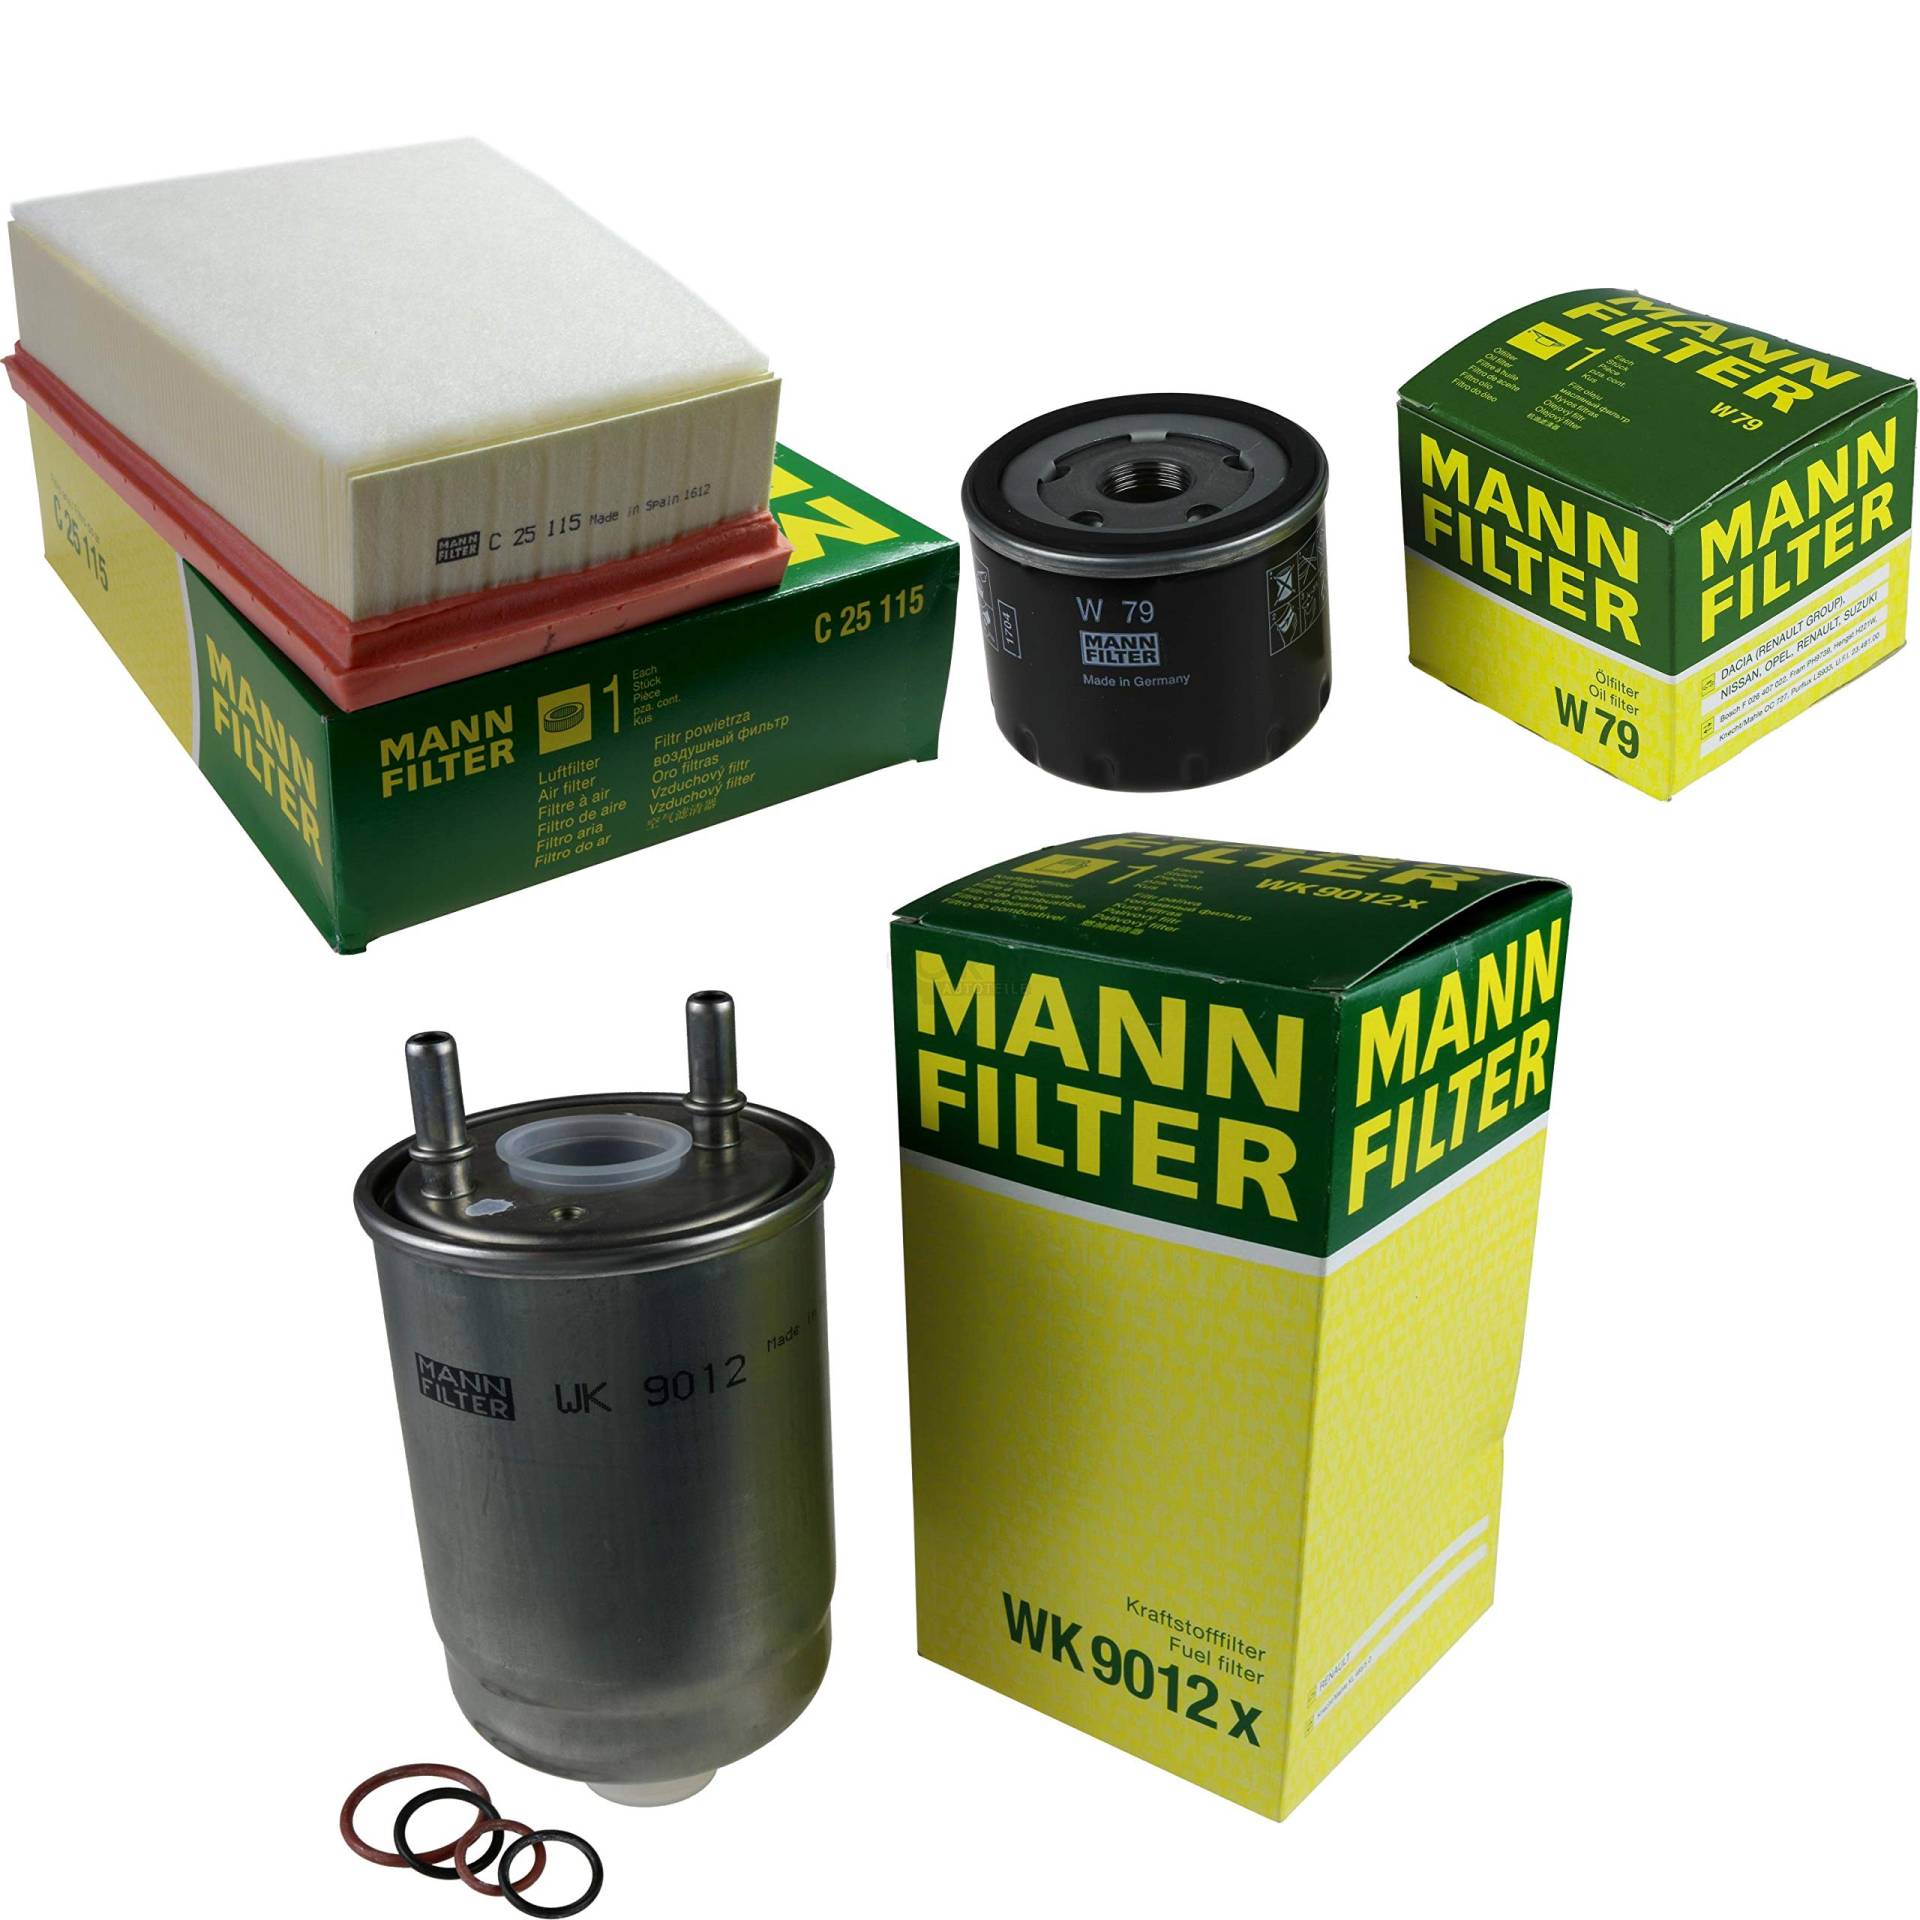 MANN-FILTER Inspektions Set Inspektionspaket Luftfilter Ölfilter Kraftstofffilter von Diederichs